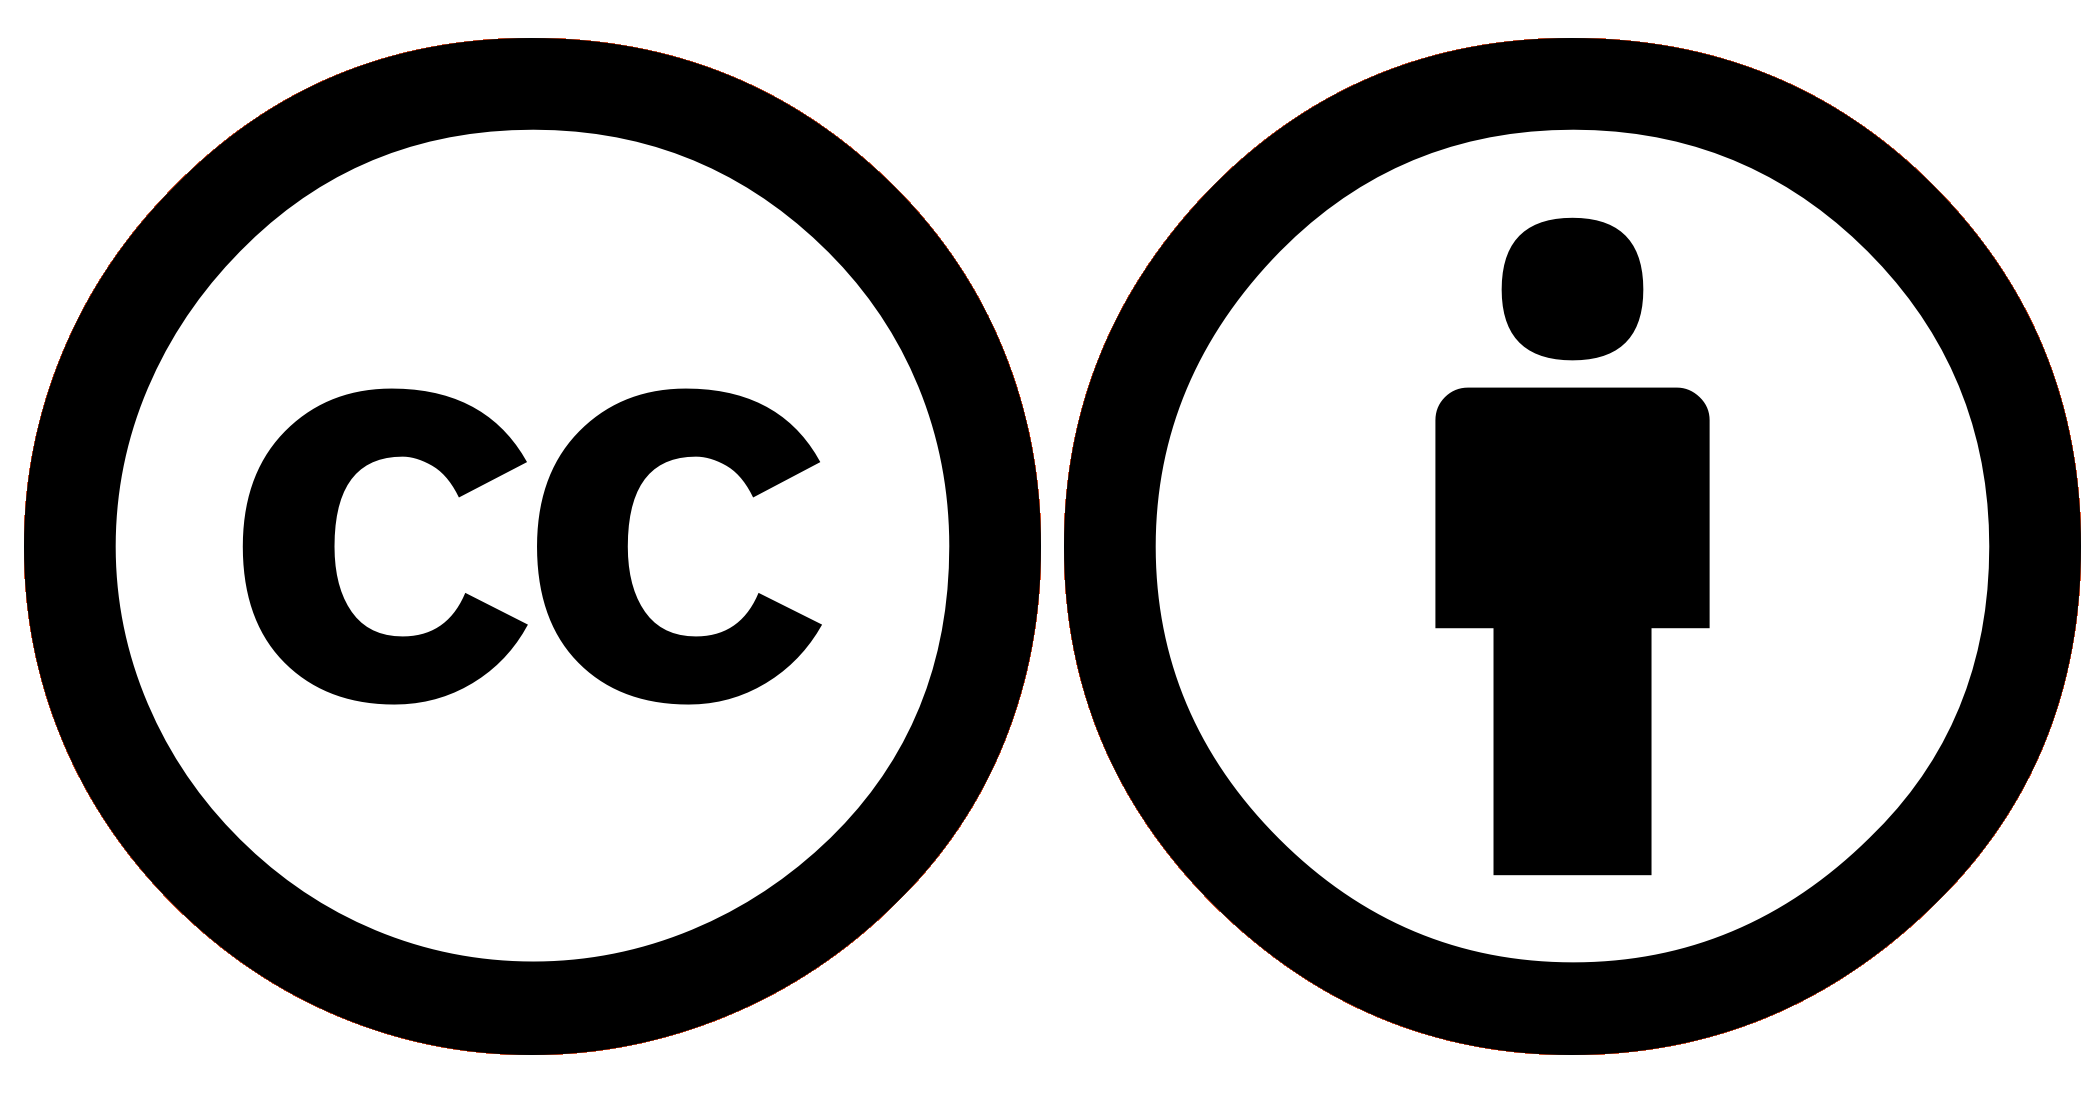 Creative Commons значки. Creative Commons Attribution 4.0. (Cc by 4.0). Creative Commons Attribution. Creative commons 4.0